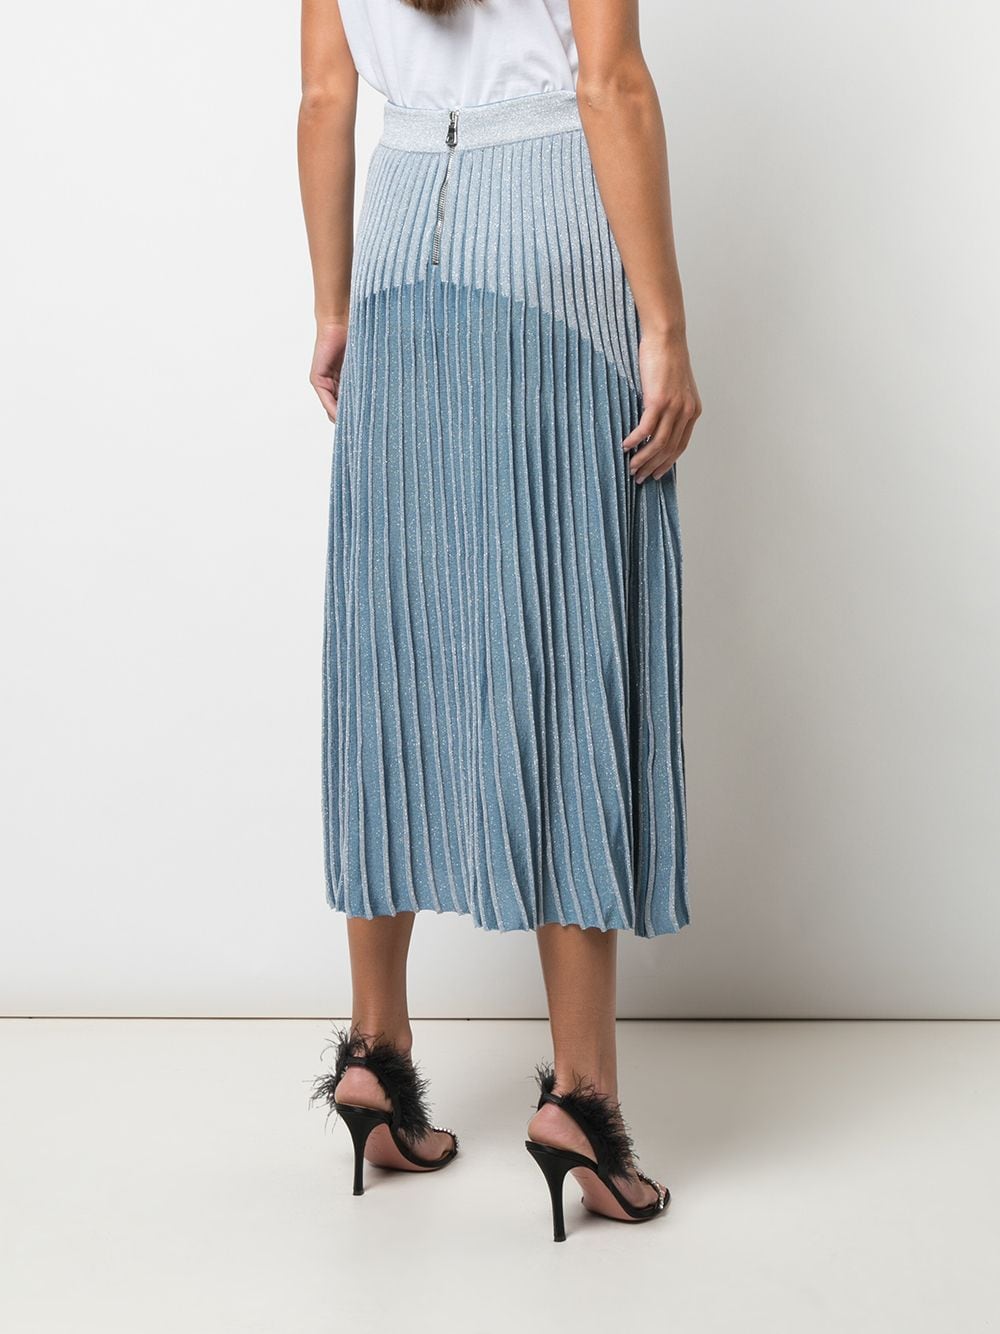 Balmain high-waisted Pleated Skirt - Farfetch